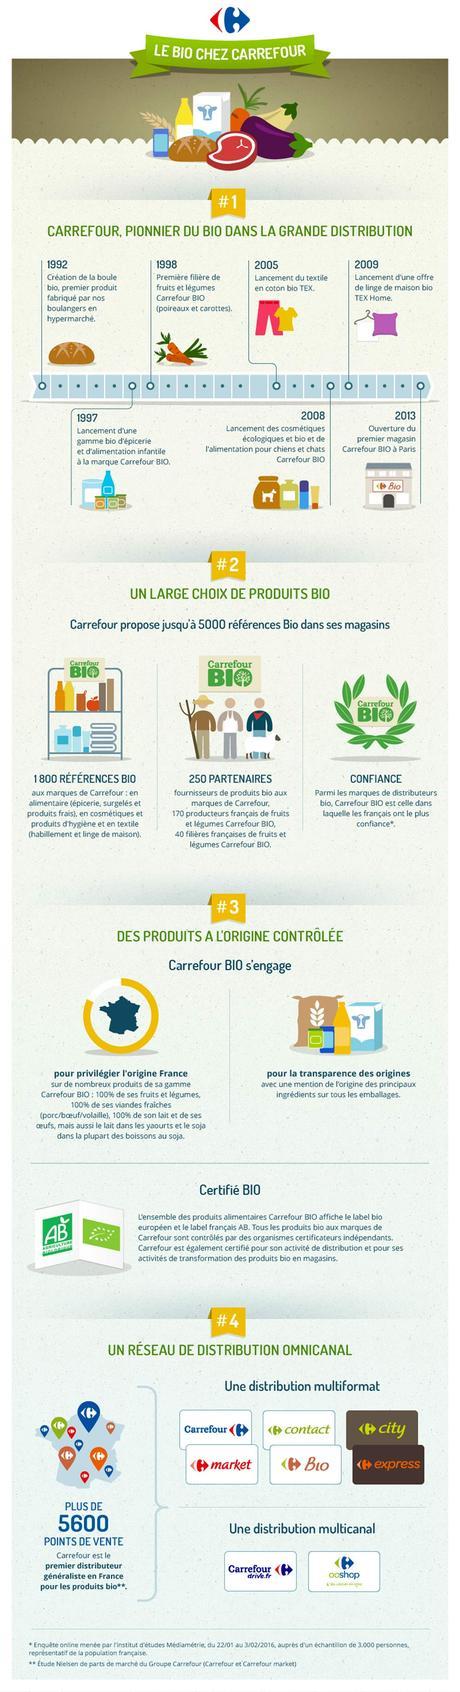 Infographie---Les-engagements-de-Carrefour-pour-le-bio